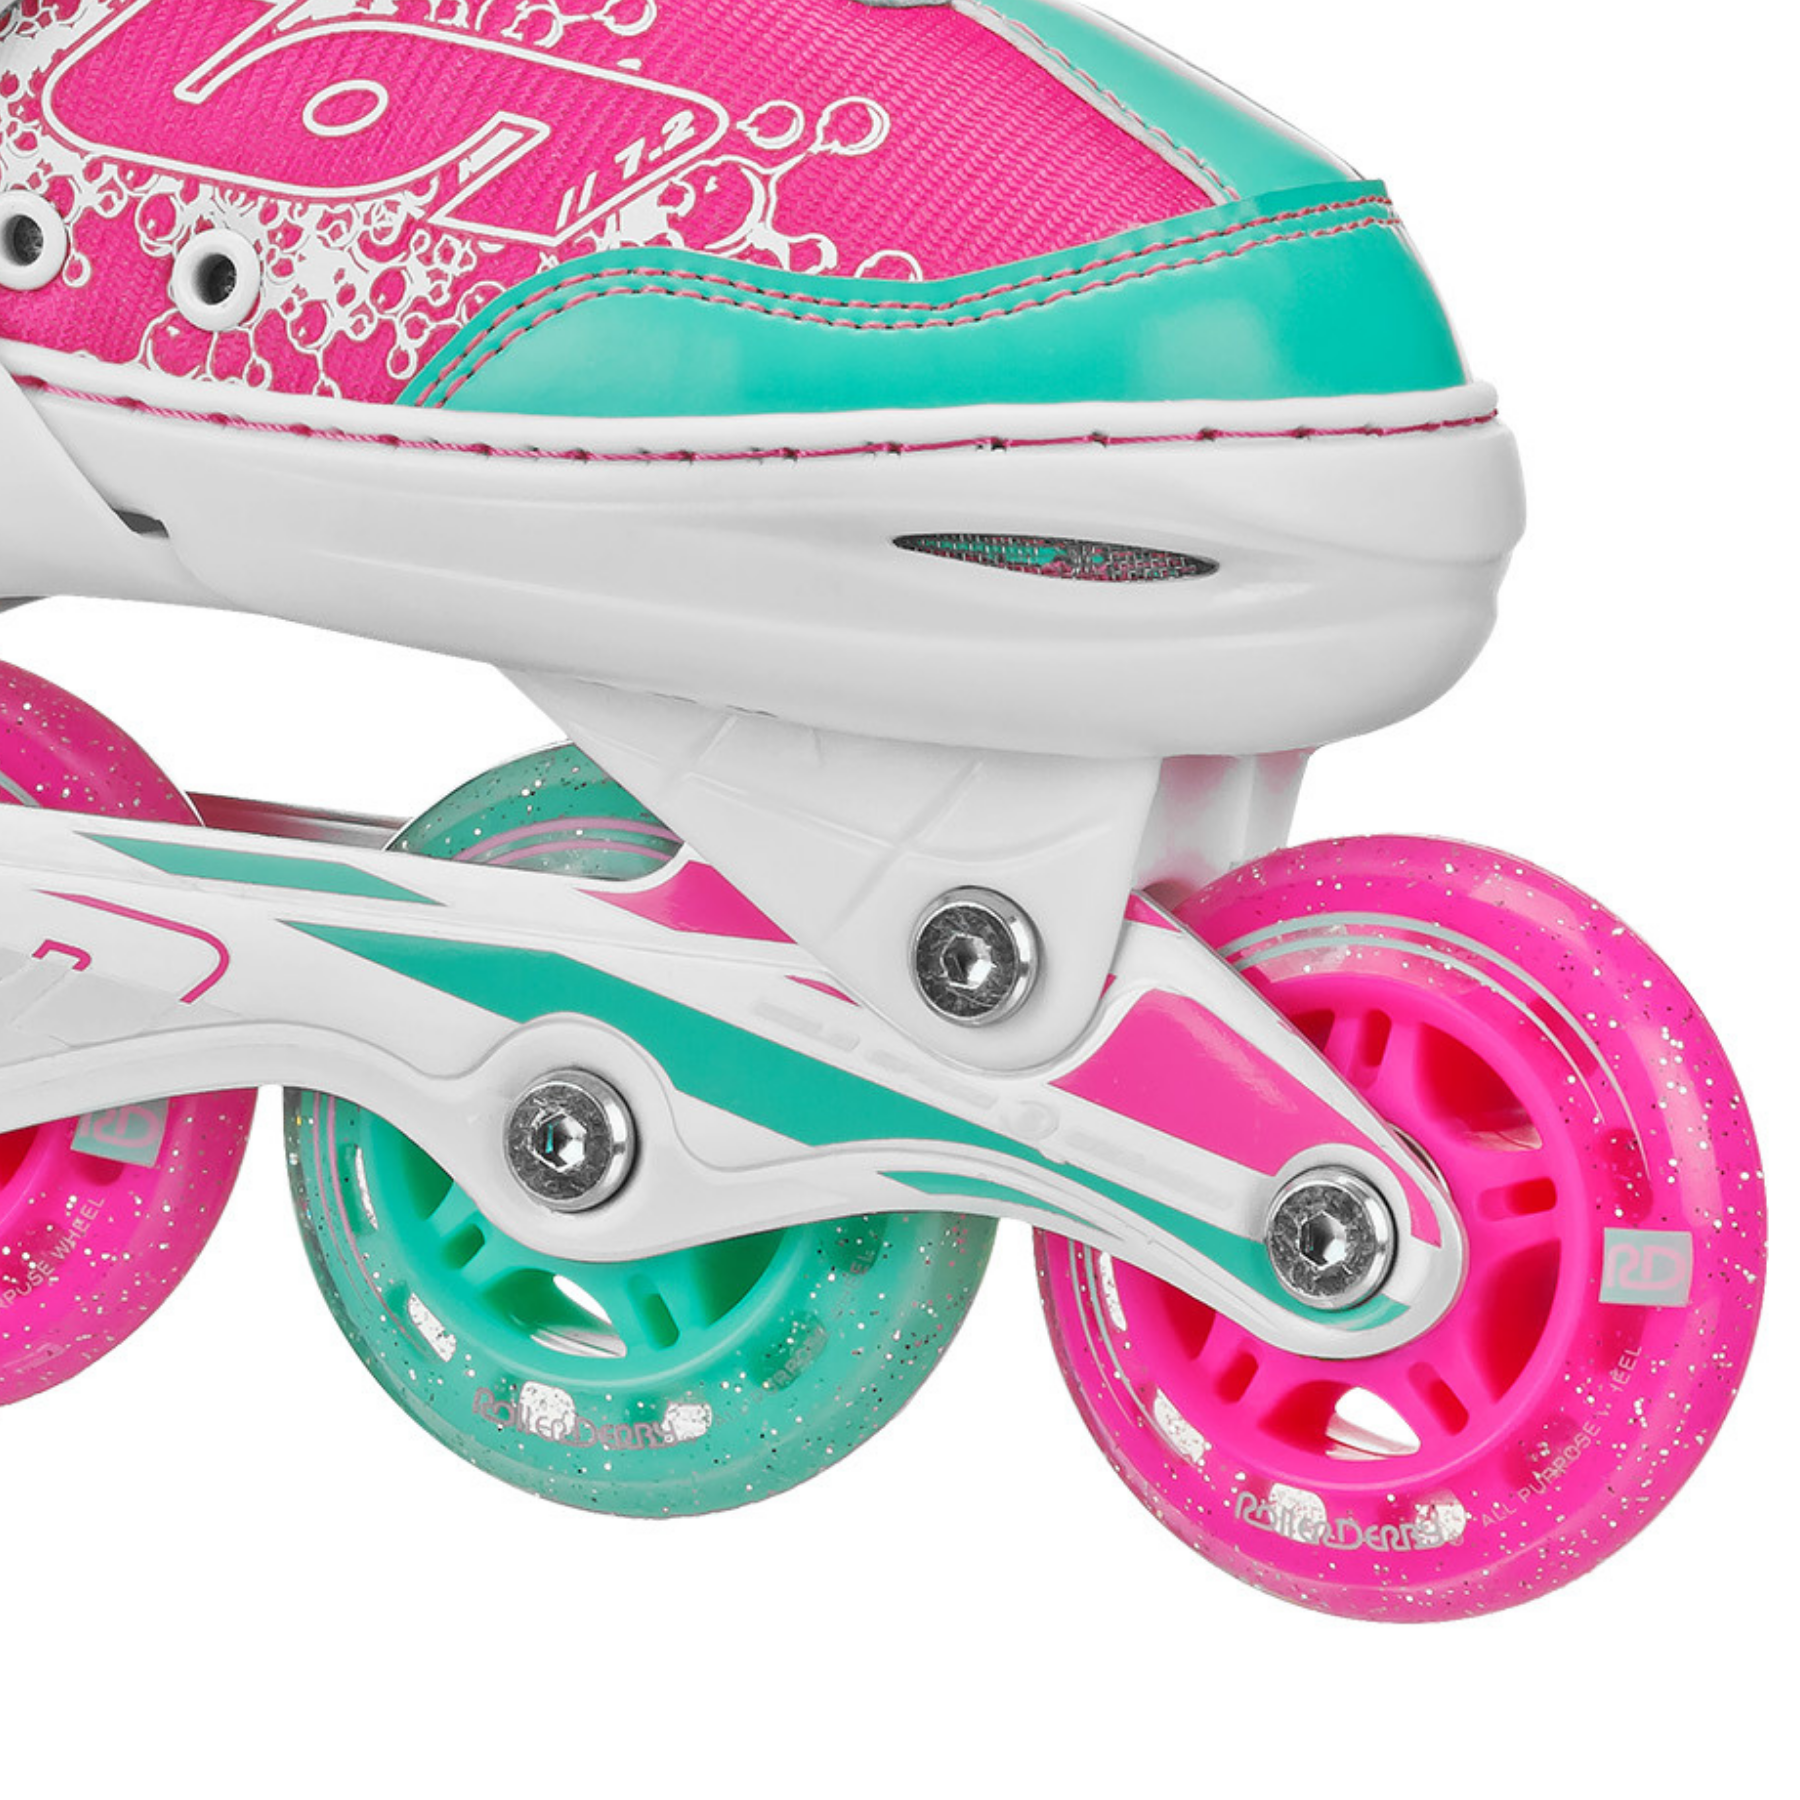 Roller Derby ION 7.2 Girl's Adjustable Inline Skate - image 3 of 9